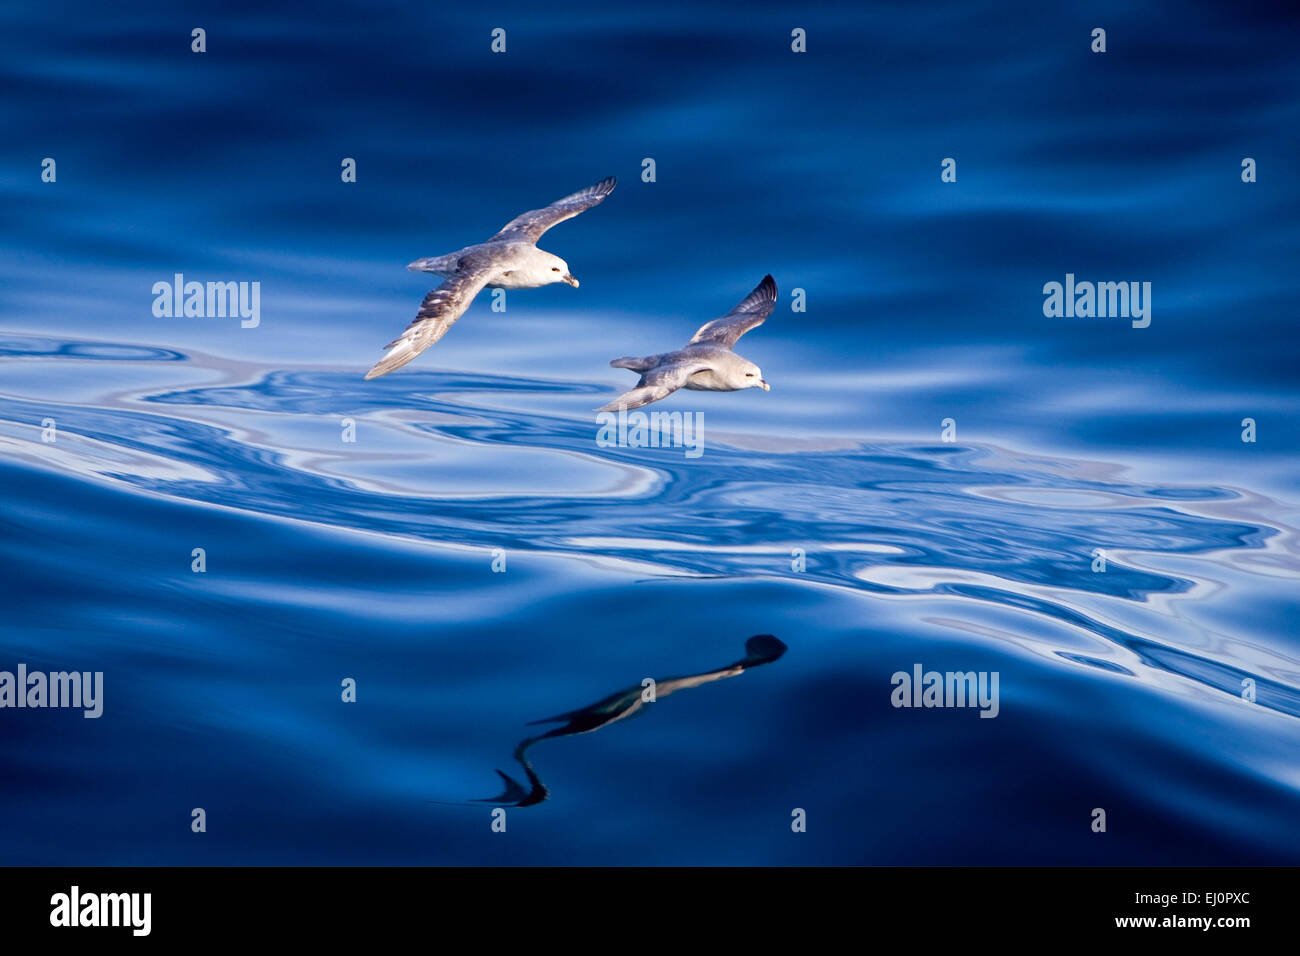 Los fulmares, Glide, Mar del Norte, al norte de Noruega, Noruega, la UE, Europa, 2, par, dos aves marinas, parapente, mar azul, paz, tranquilidad, Foto de stock